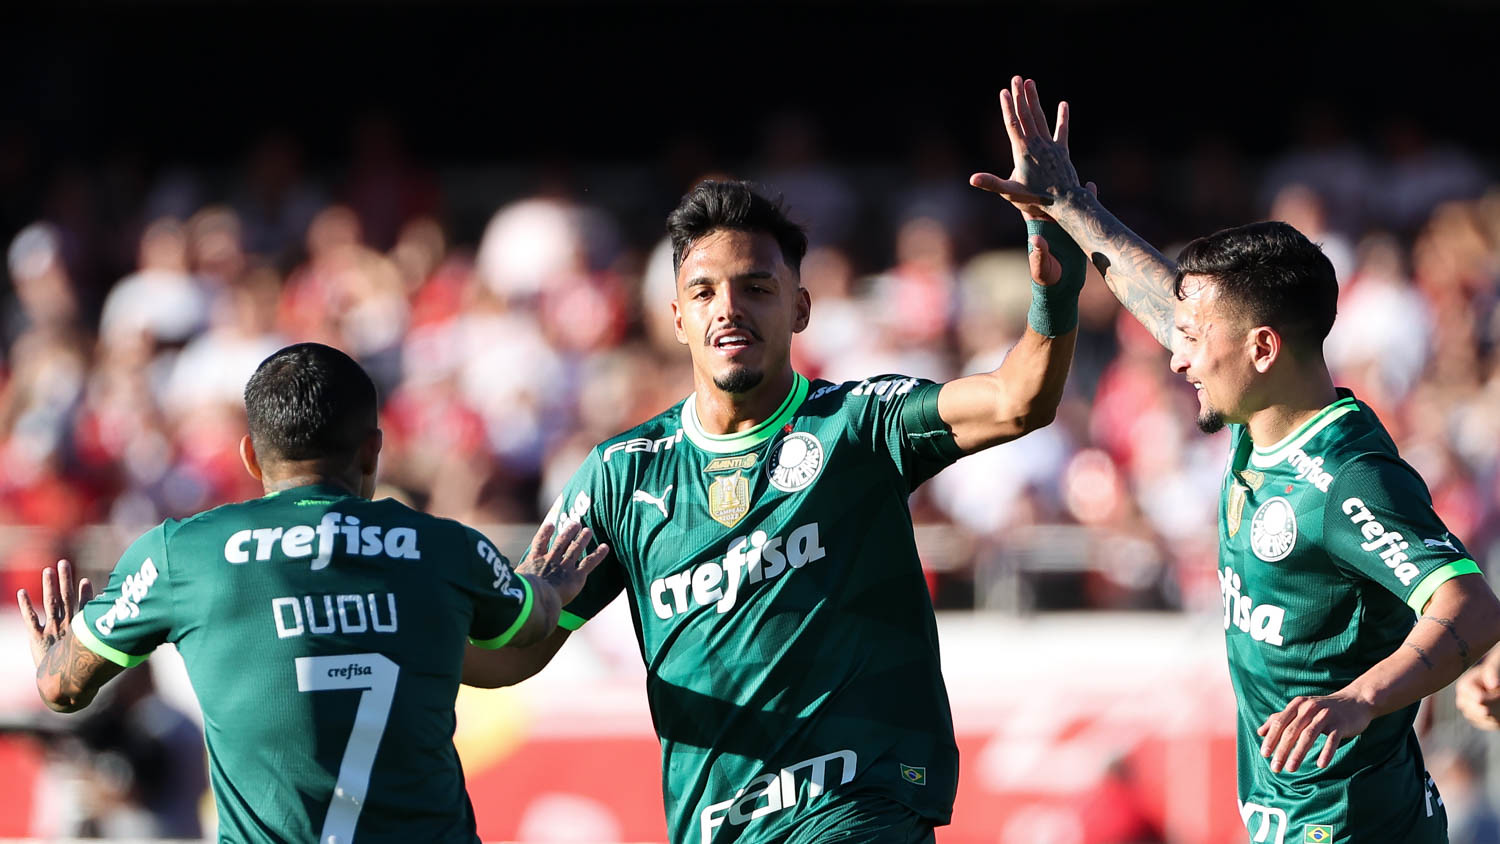 O São Paulo recebeu o Palmeiras, neste domingo, em partida válida pela 10ª rodada do Campeonato Brasileiro, no Morumbi e foi derrotado pelo placar de 2 a 0,